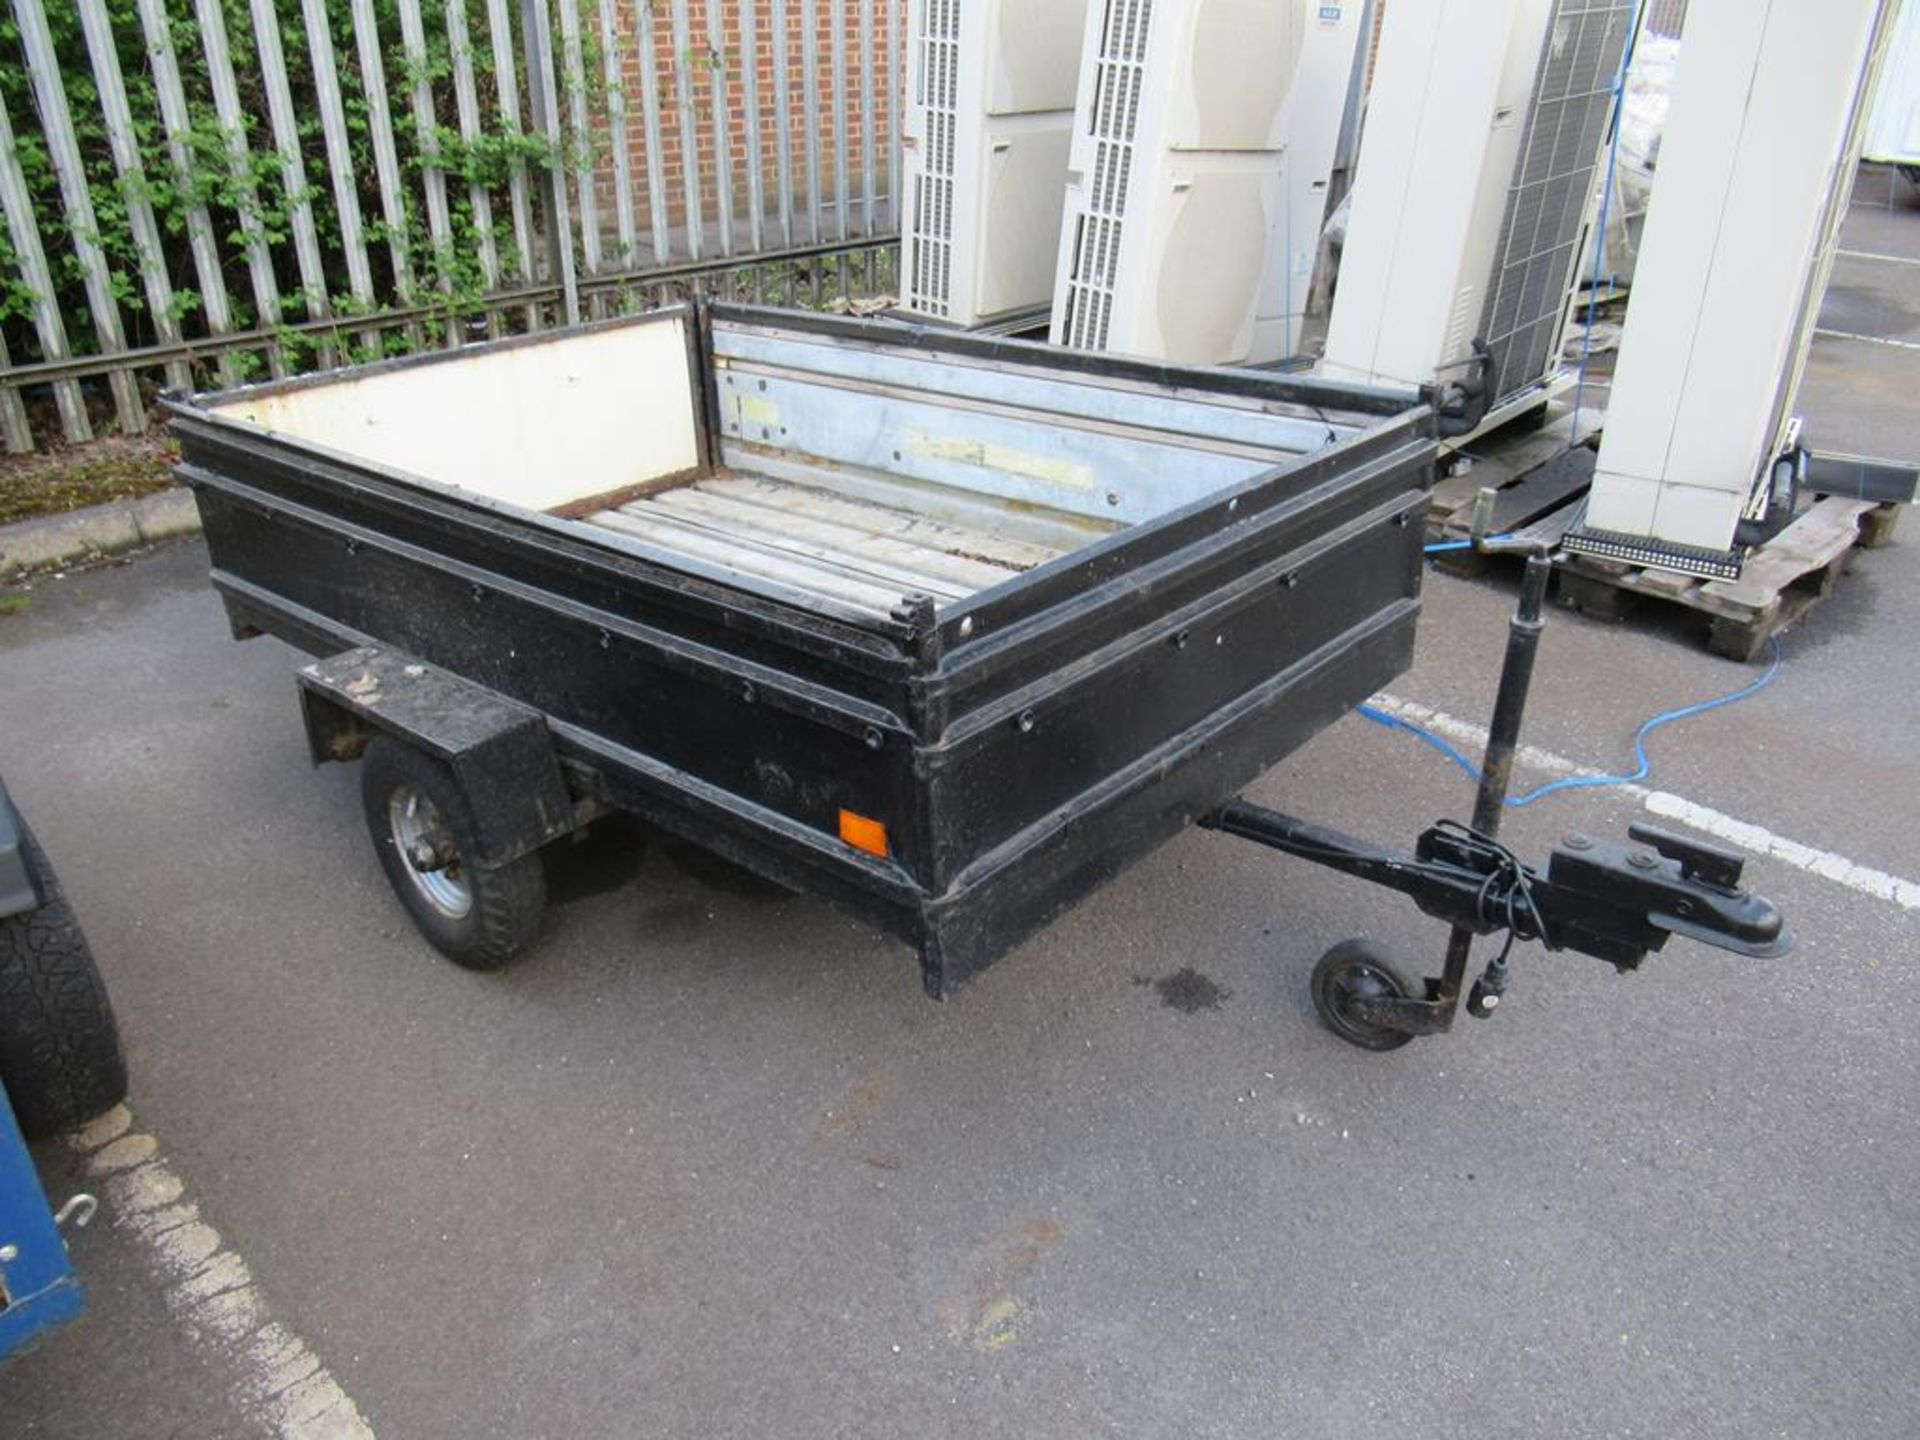 4.6' x 5.6' rear door drop trailer with legal lights